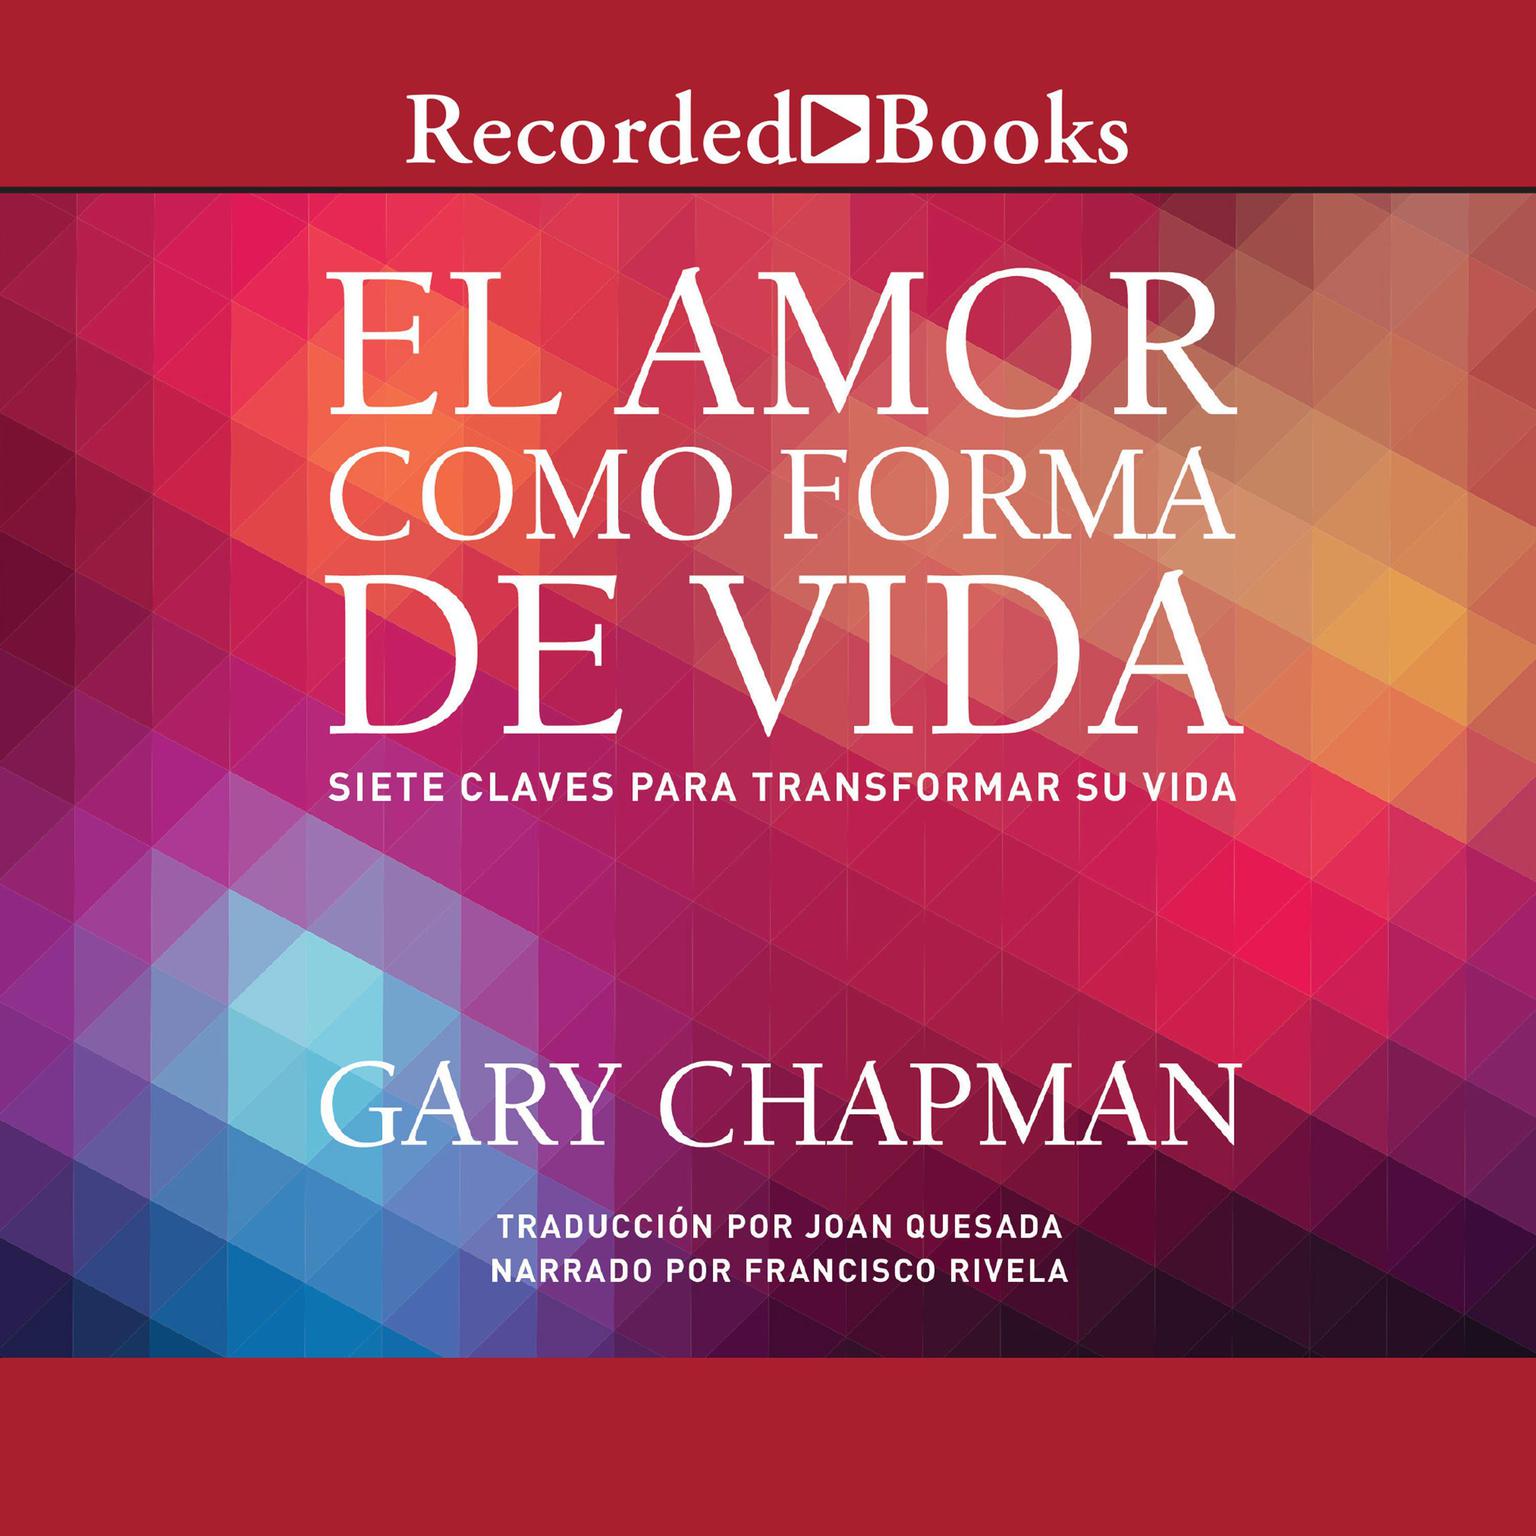 El amor como forma de vida: Siete claves para transformar su vida Audiobook, by Gary Chapman